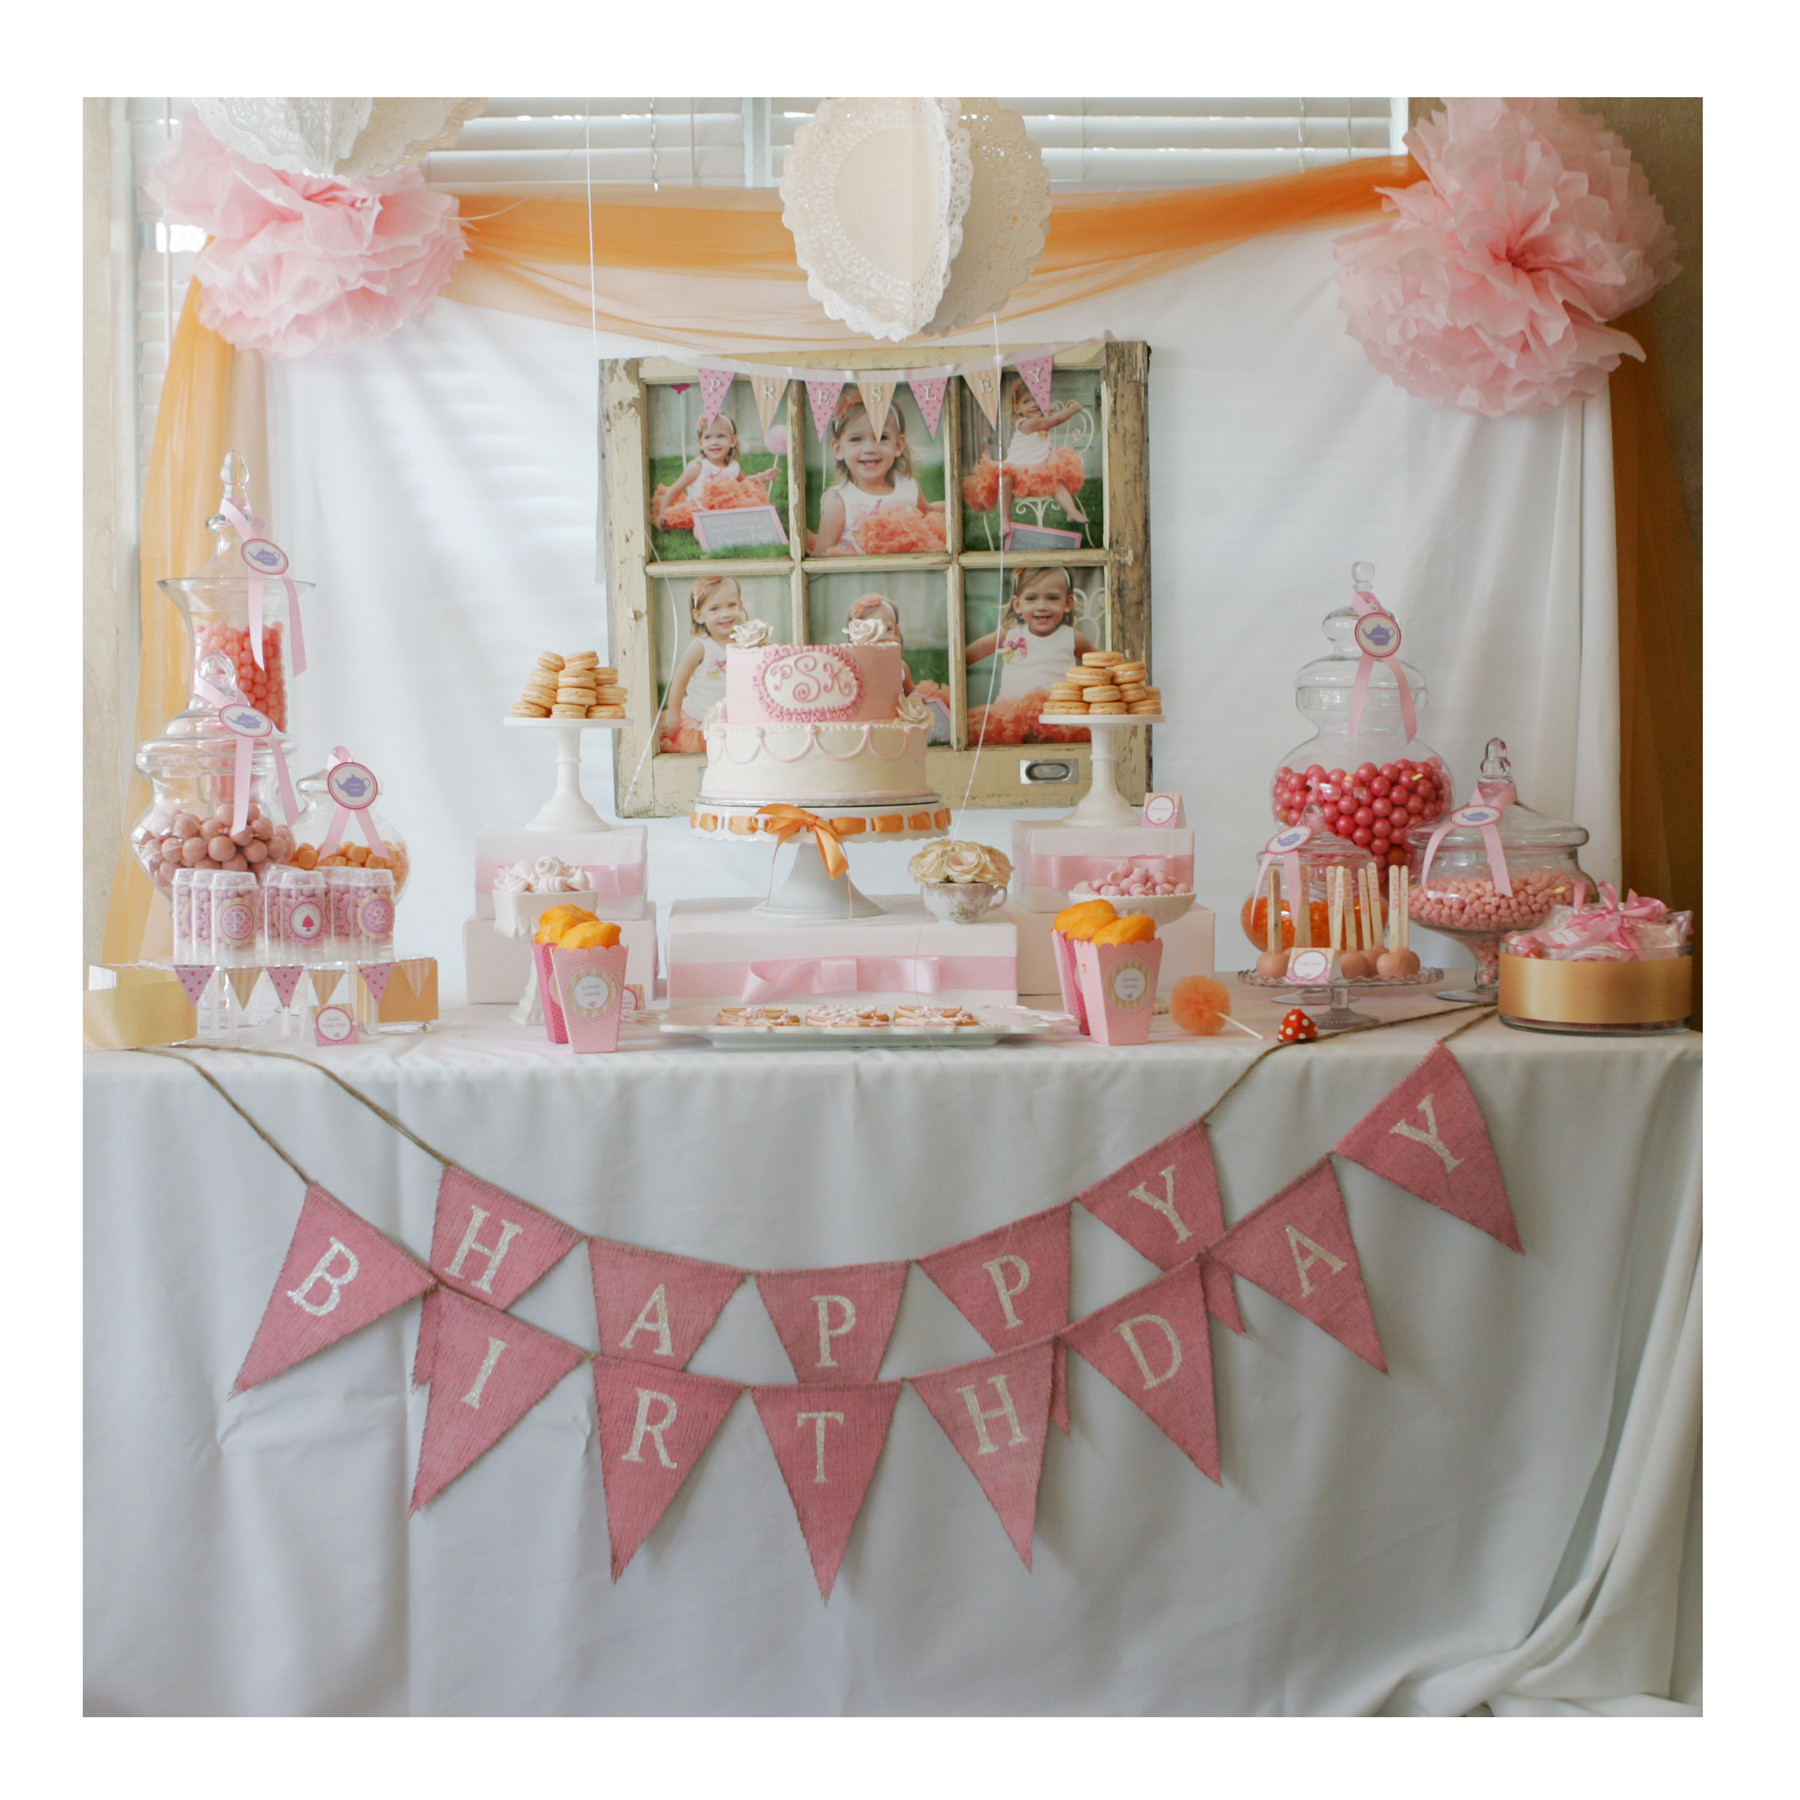 2Nd Birthday Gift Ideas For Girl
 Teacups & Tutu s 2nd Birthday Par tea Project Nursery